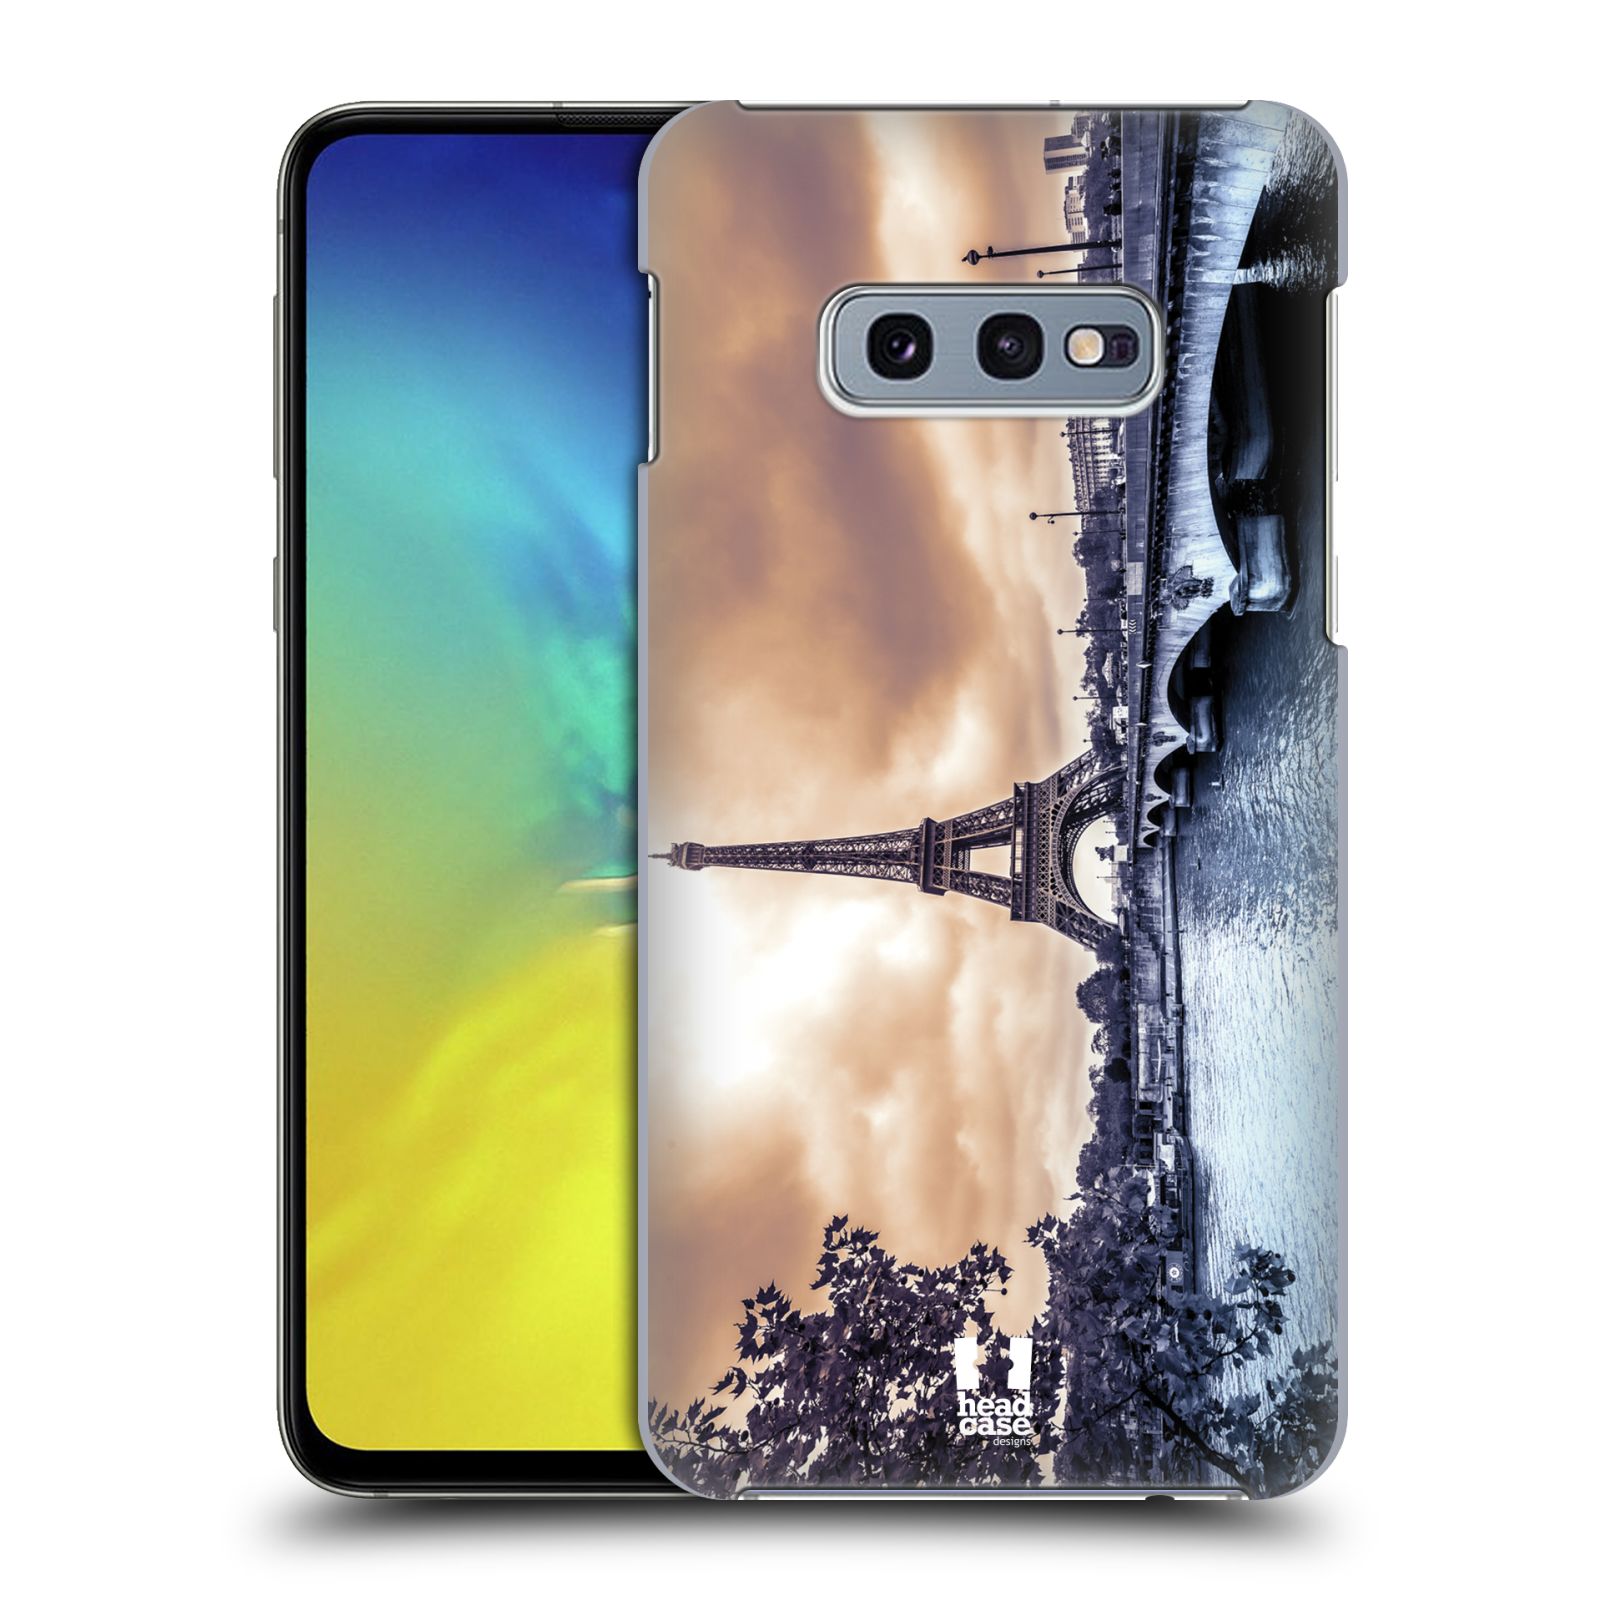 Pouzdro na mobil Samsung Galaxy S10e - HEAD CASE - vzor Panoramata měst horizontální foto DEŠTIVÝ DEN V PAŘÍŽI, FRANCIE